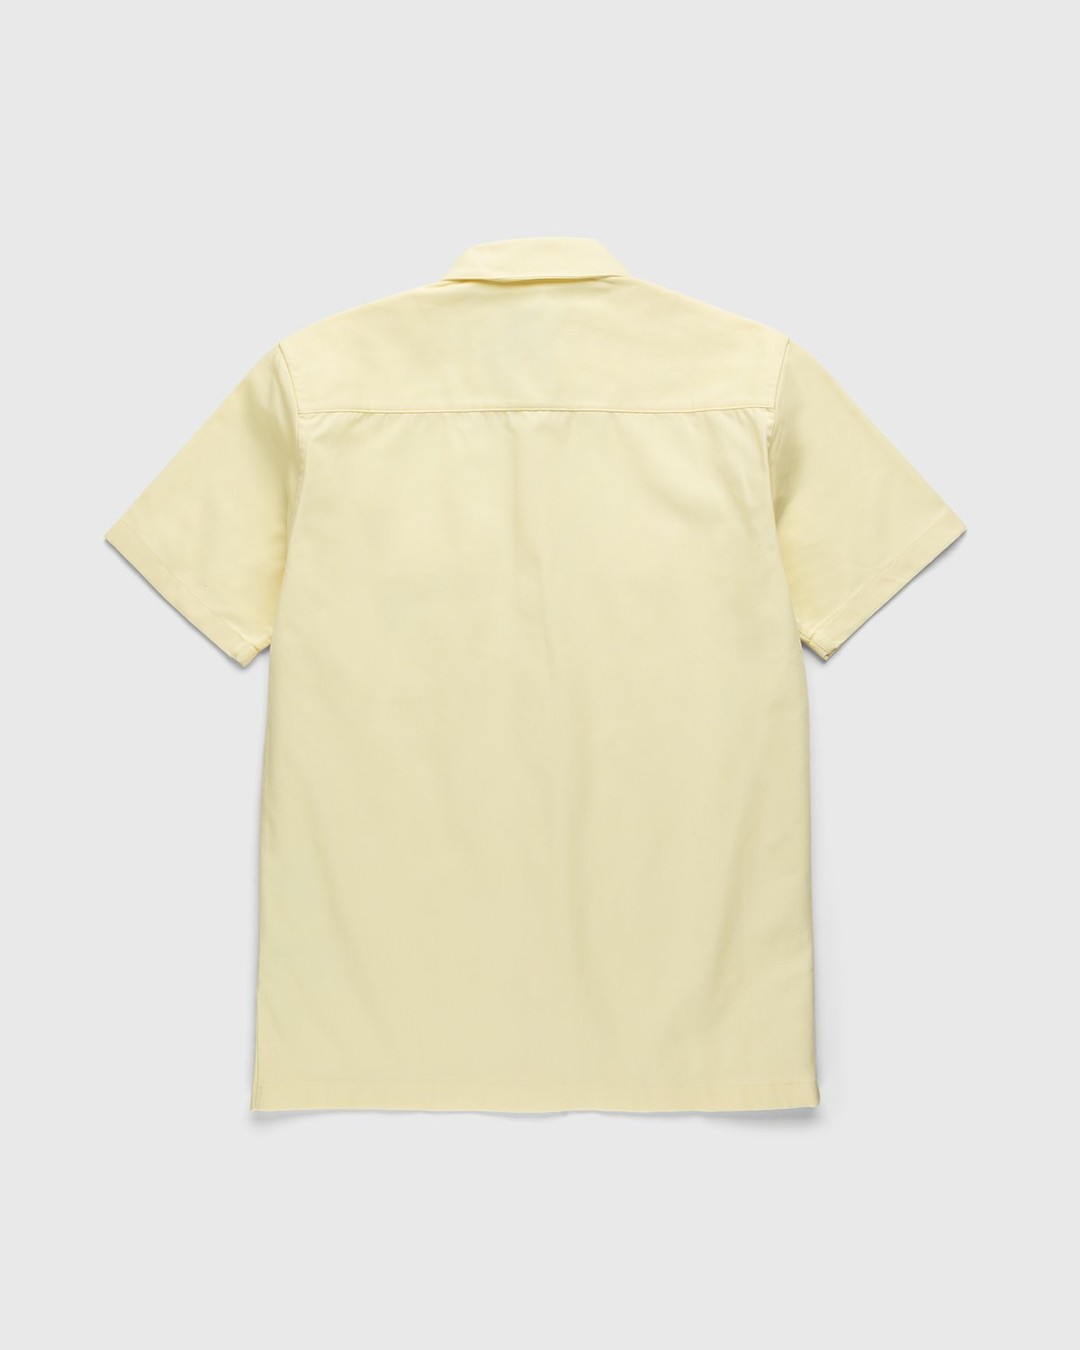 Carhartt WIP – Master Shirt Soft Yellow - T-shirts - Yellow - Image 2